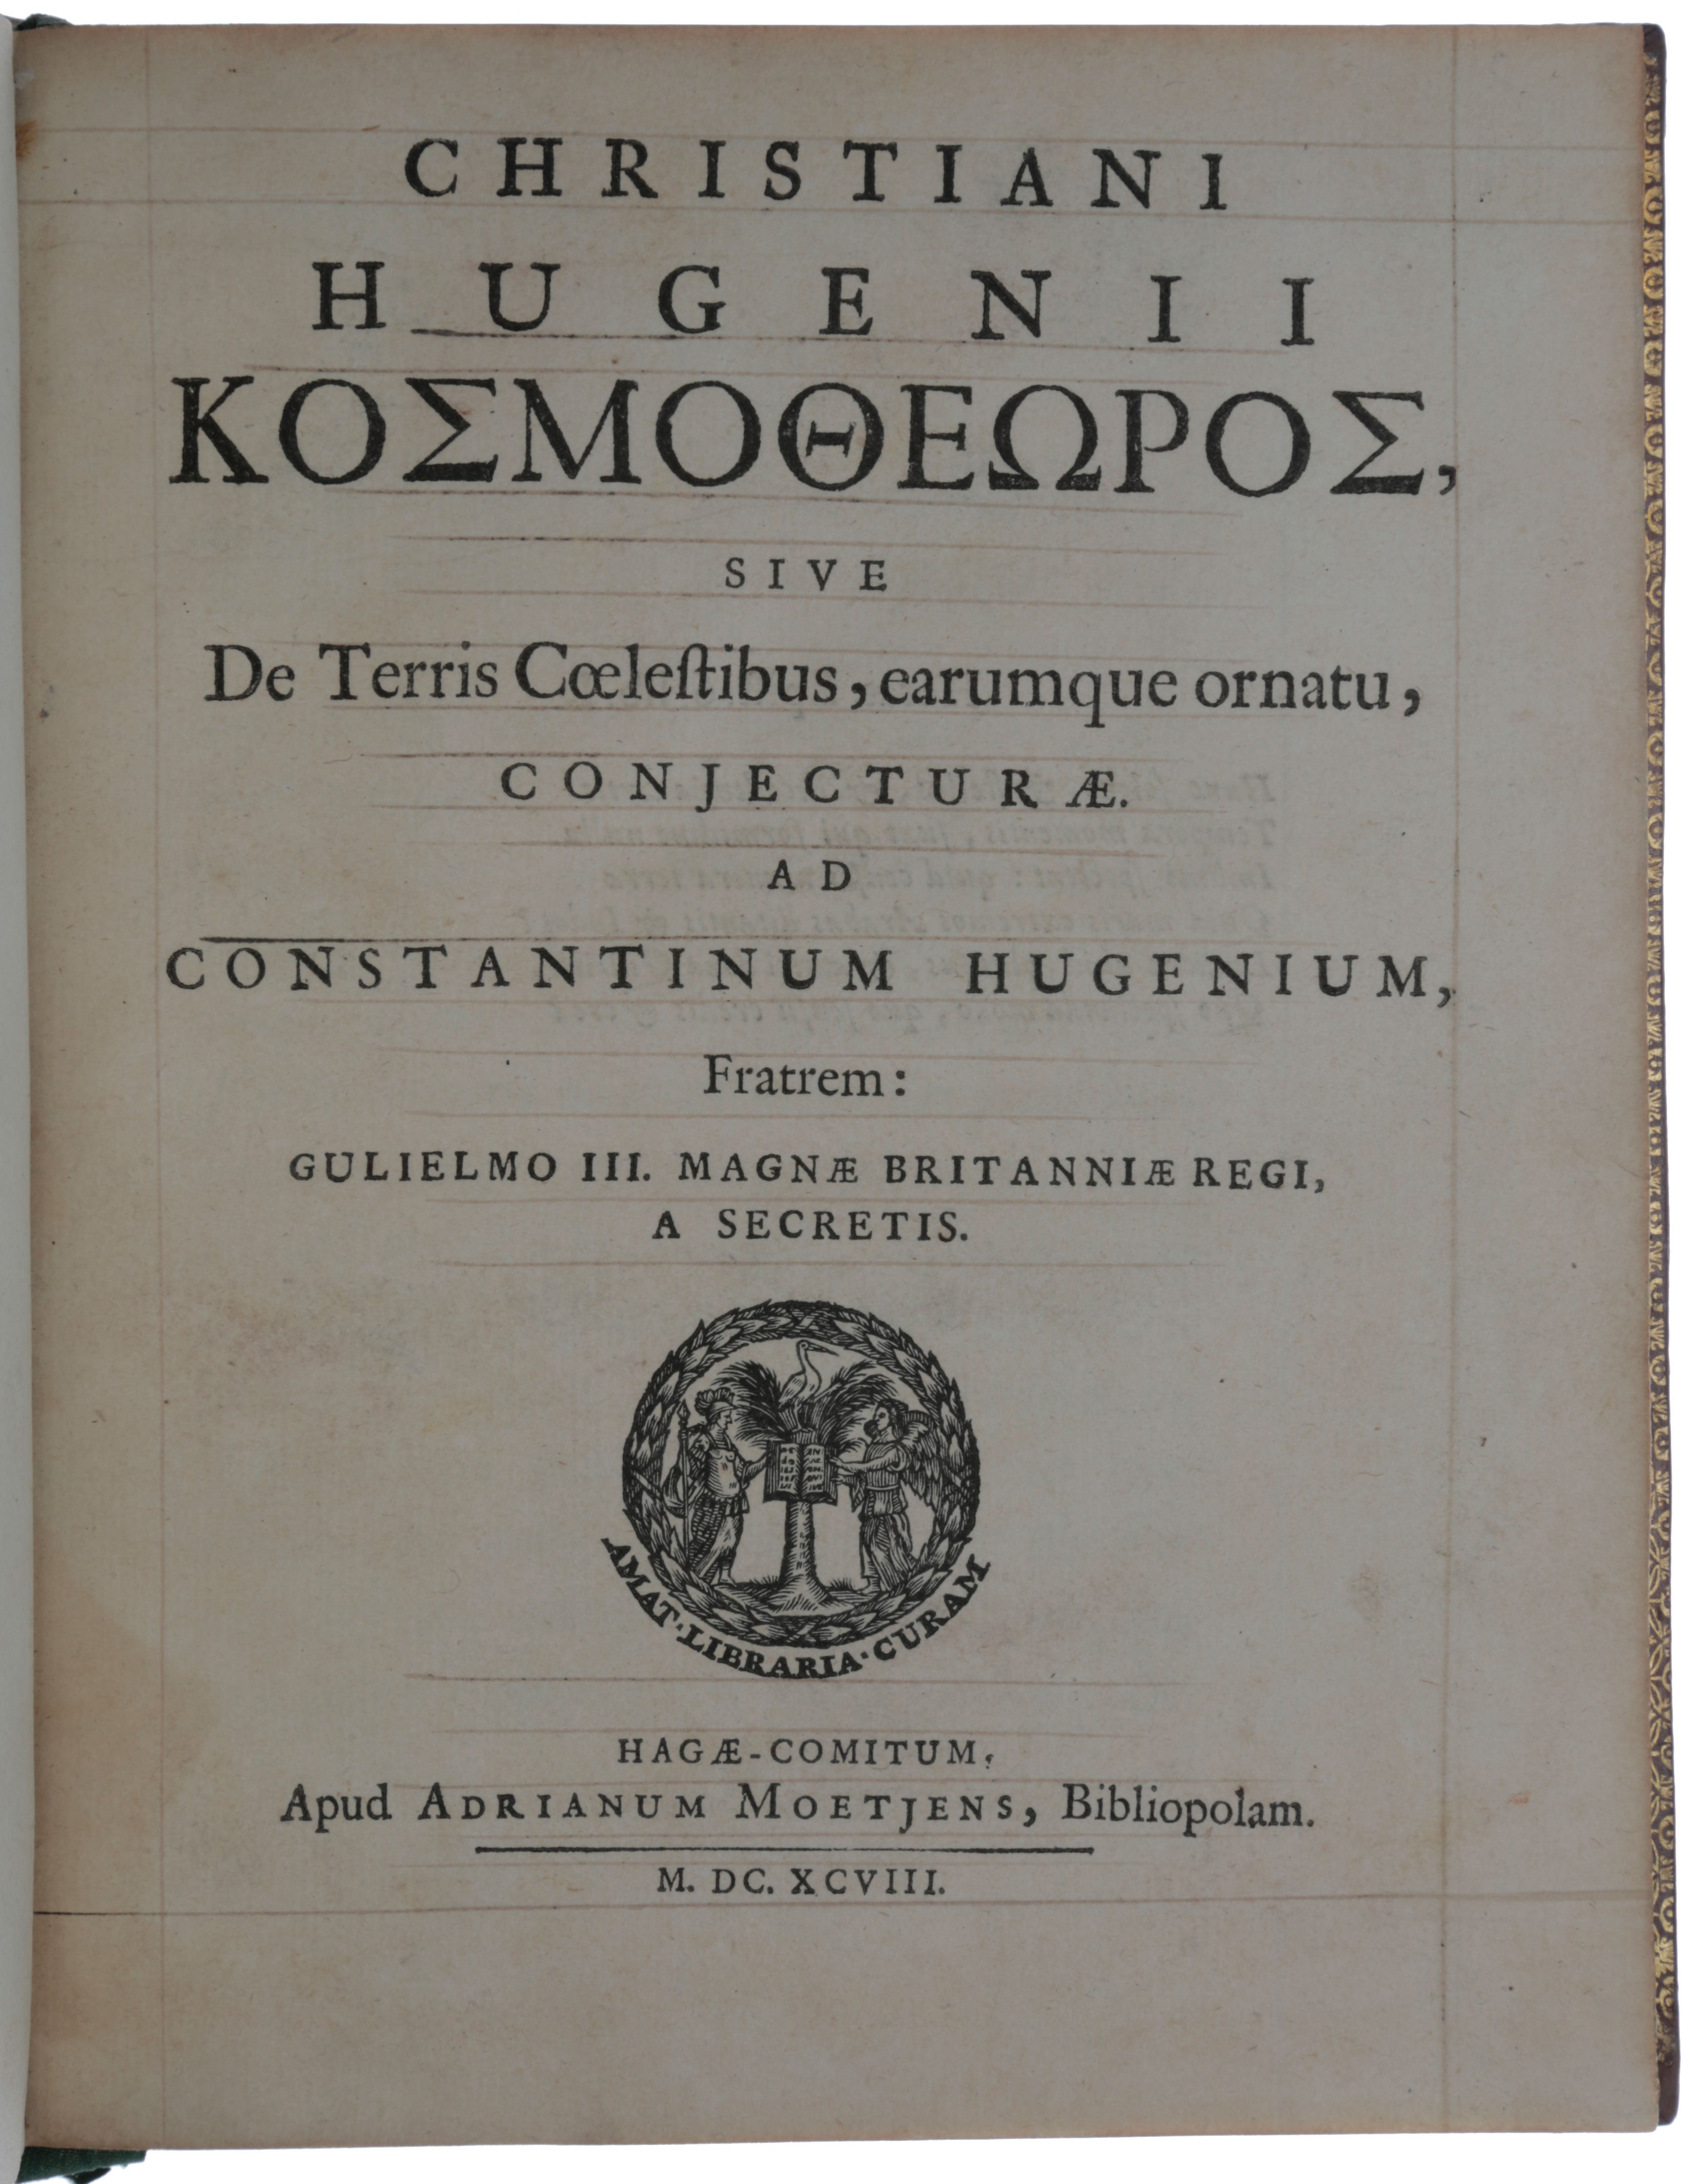 Item #5369 Koσμoθɛωρoς, sive, De terris coelestibus: earumque ornatu conjecturae. Ad Constantinum Hugenum, fratrem.. Christiaan HUYGENS.